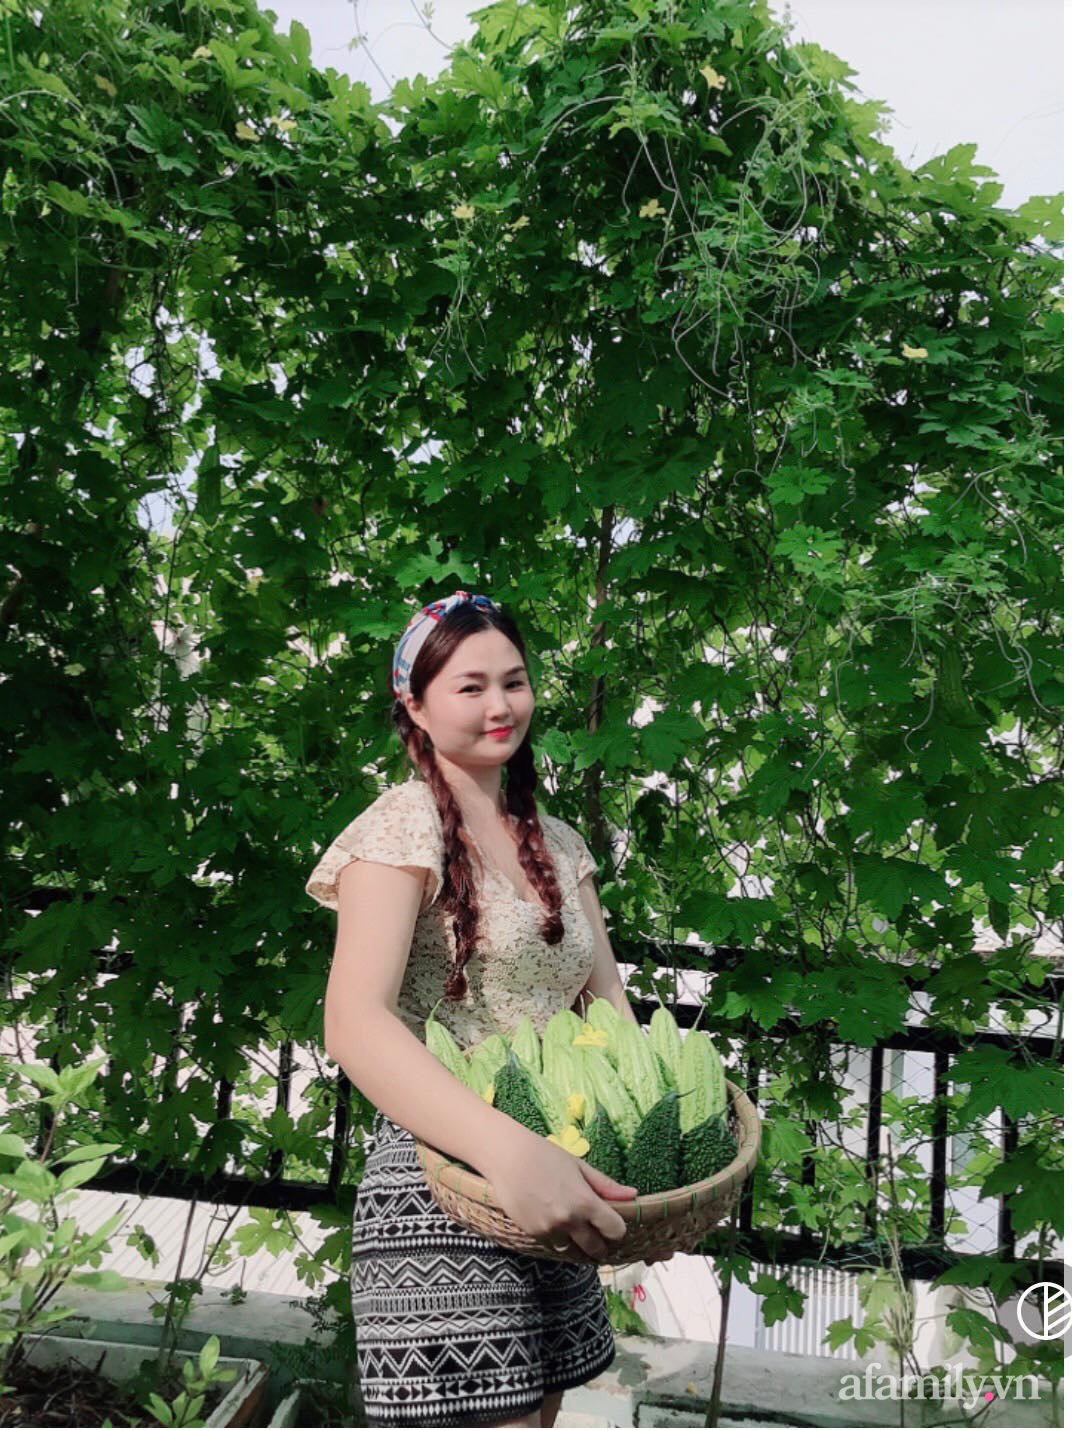 Khu vườn đầy ắp rau xanh trái ngọt giúp mẹ đảm hai con &quot;chia ngọt sẻ bùi&quot; cho người xung quanh ở Sài Gòn - Ảnh 1.